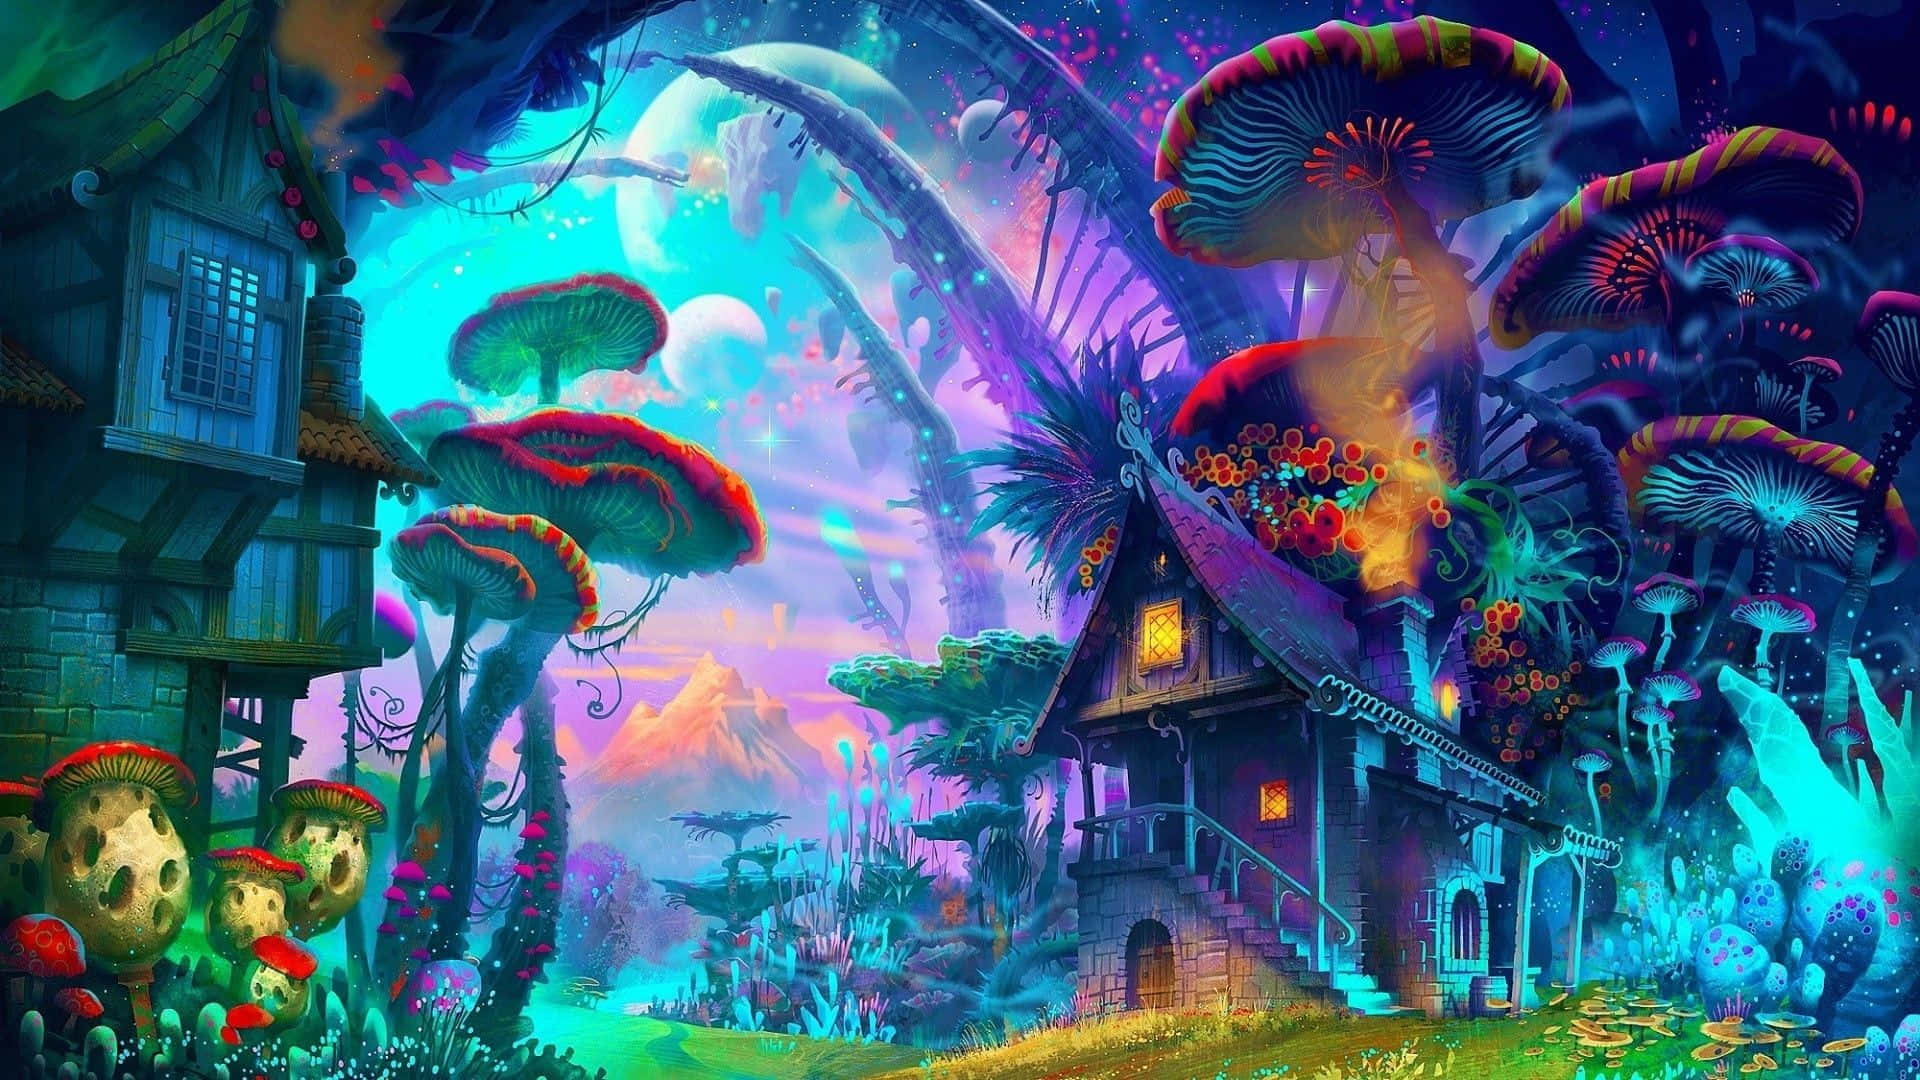 Enchanted Mushroom Village Fantasy Art Wallpaper